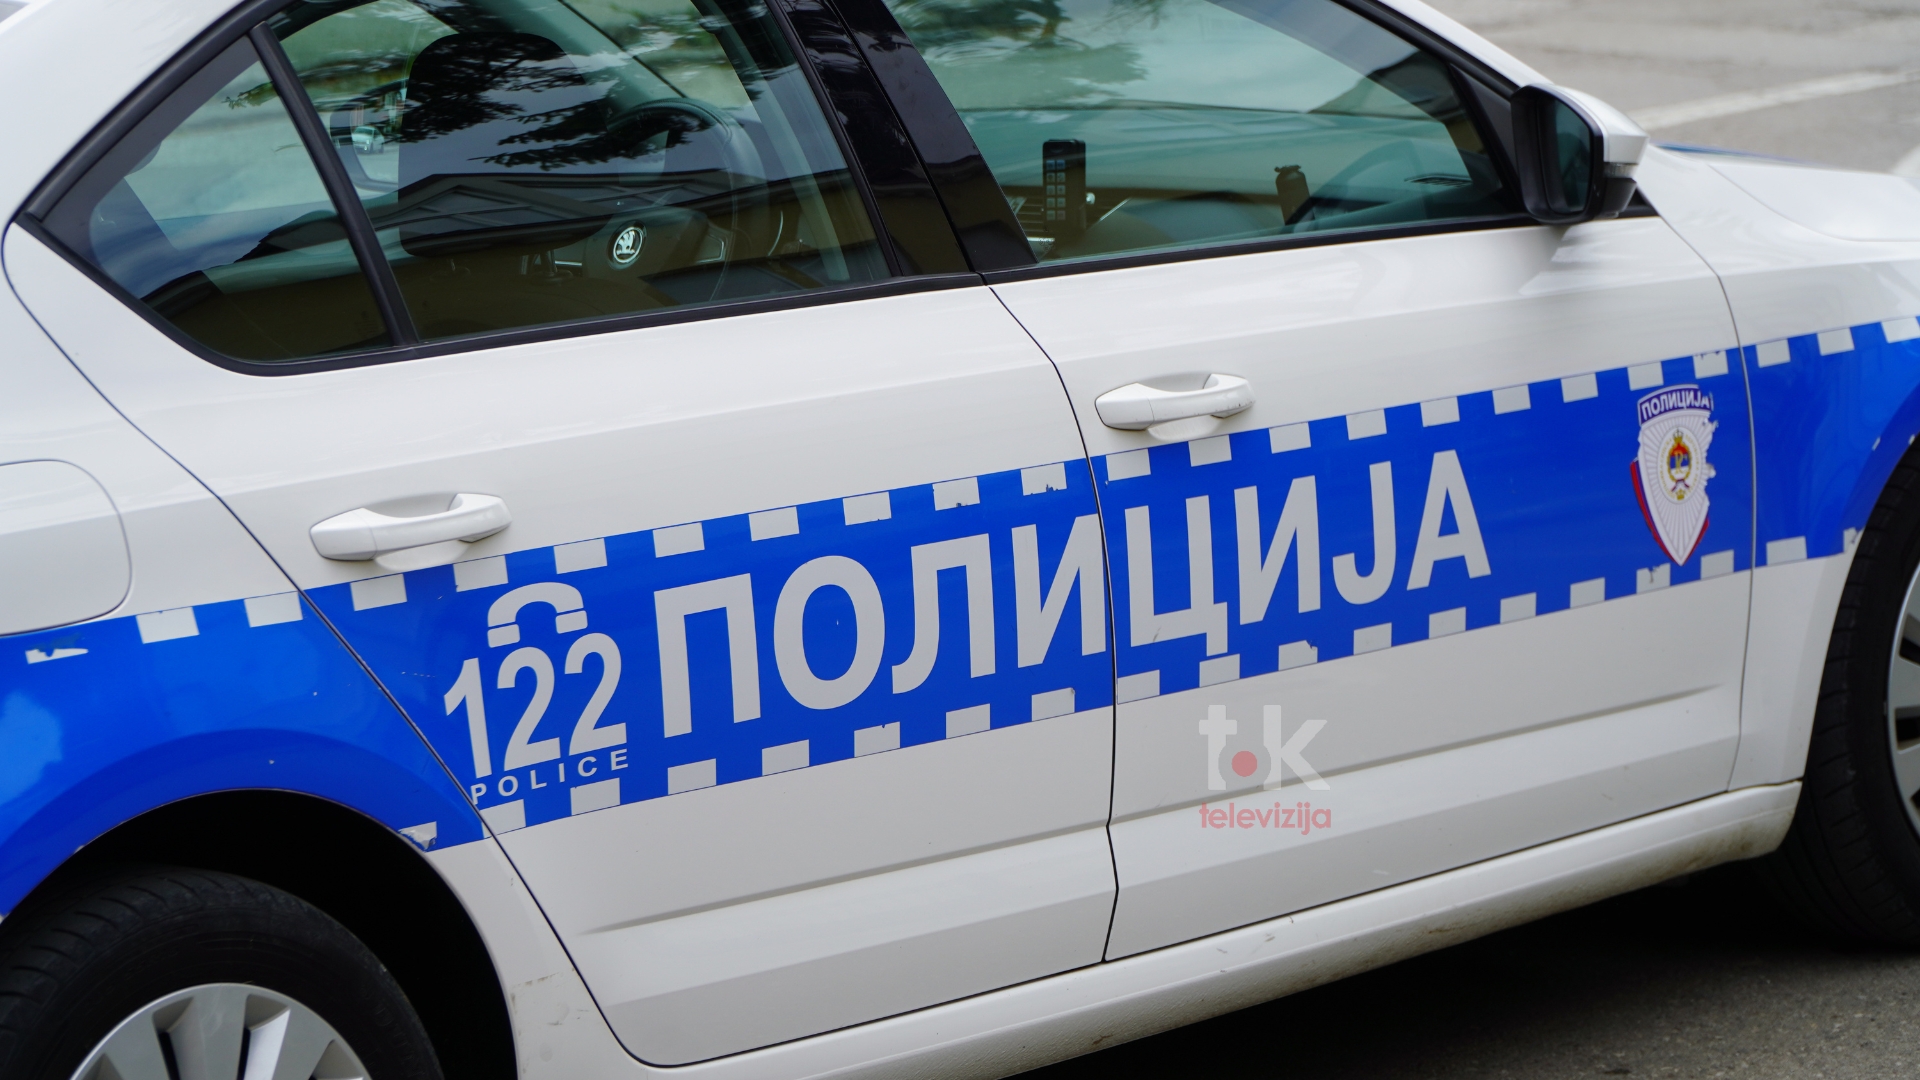 Policija zabranila javne skupove 25. novembra u Banjaluci i Mrkonjić Gradu